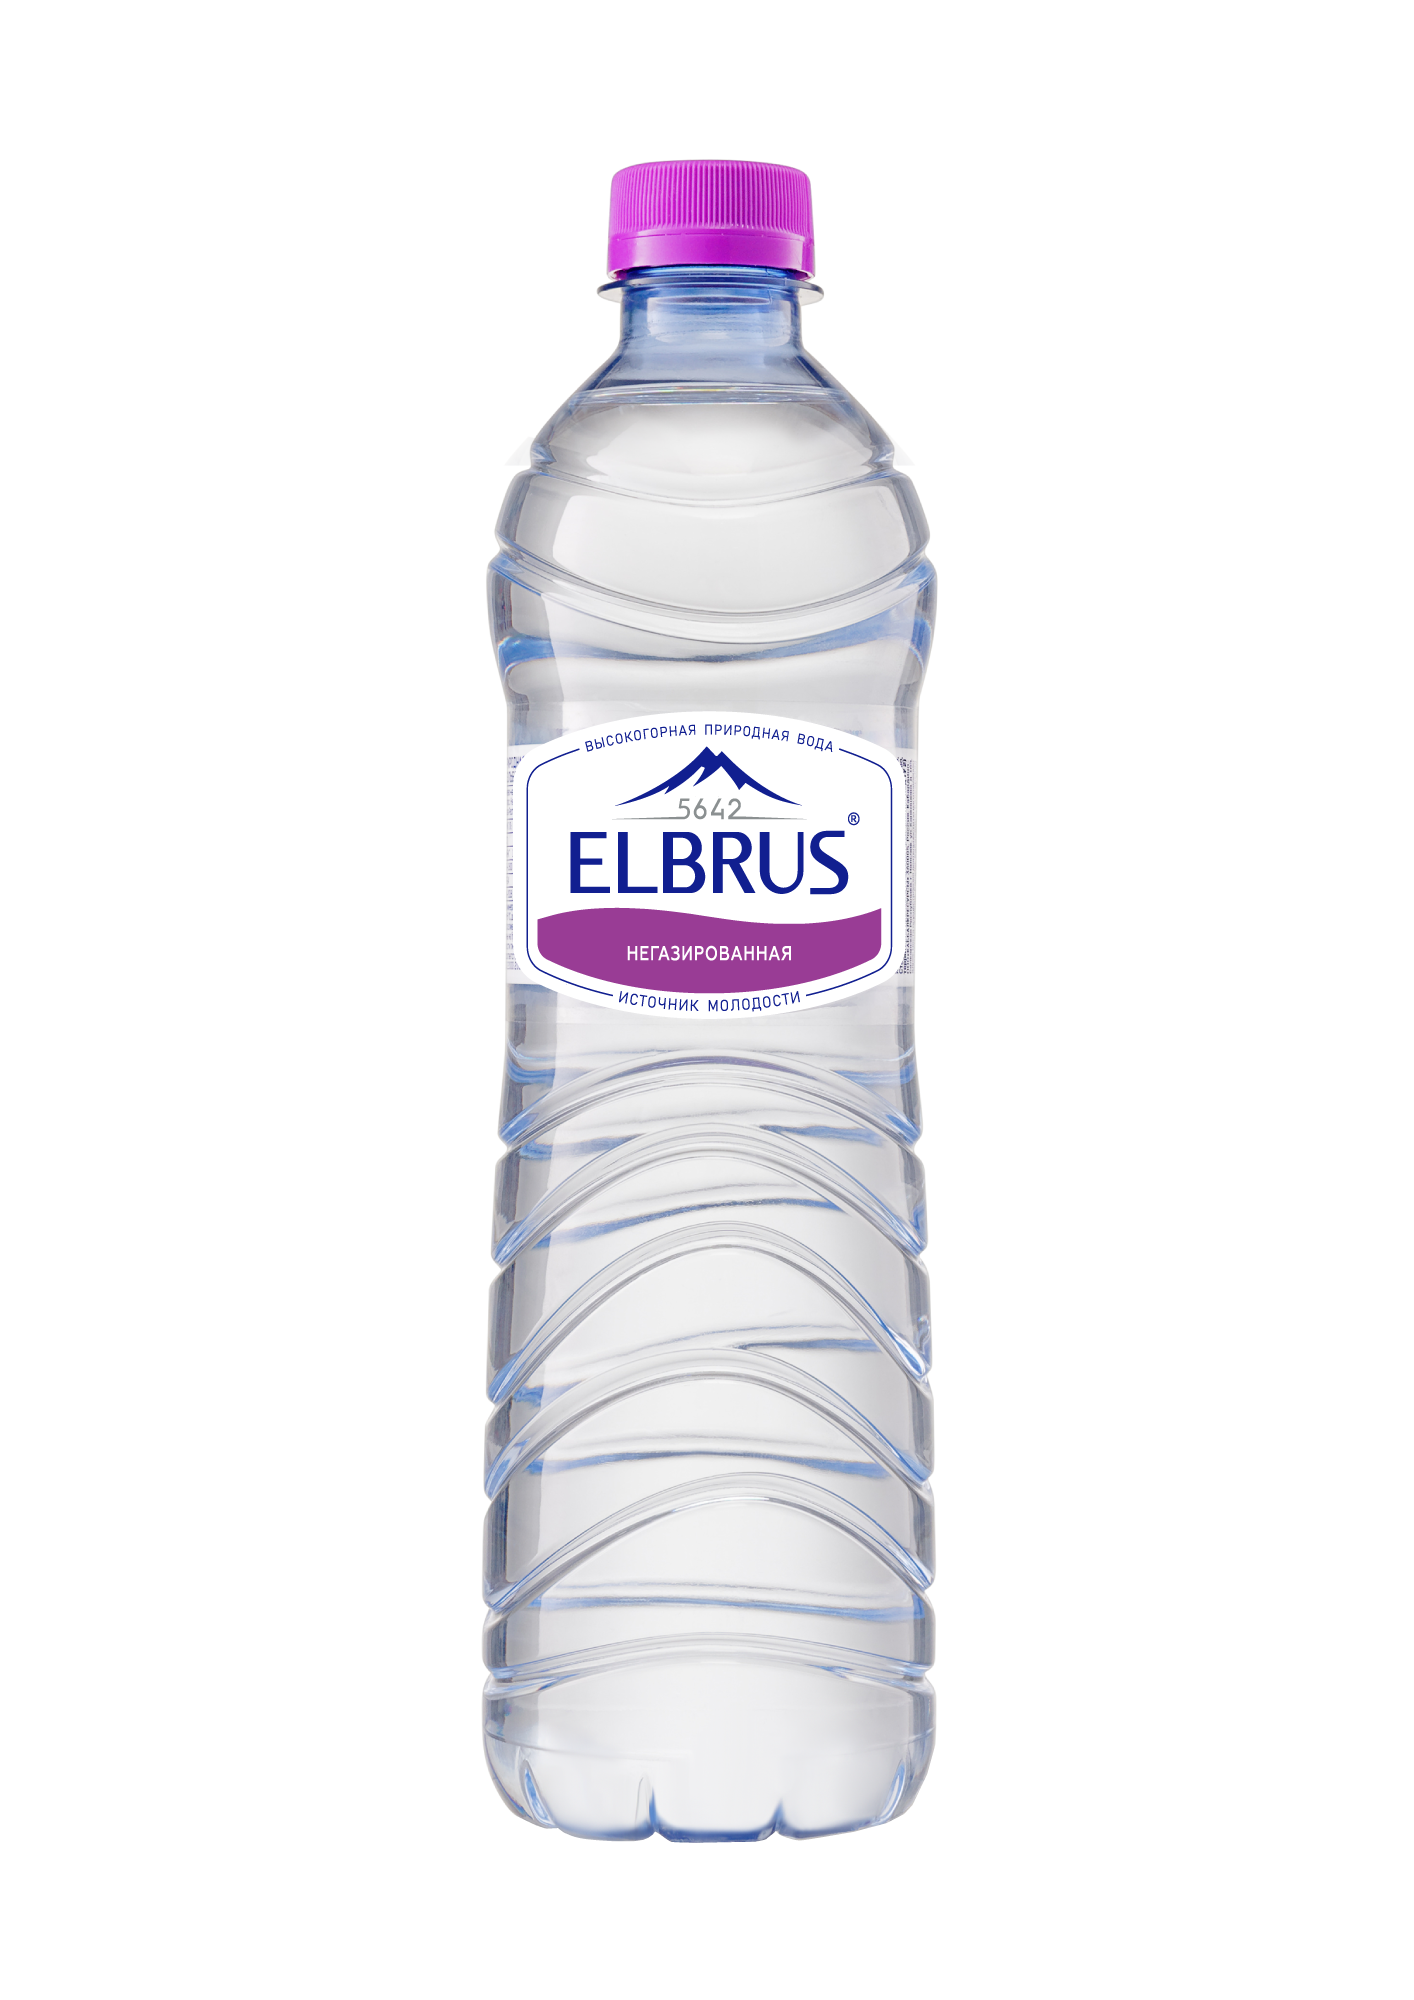 Вода природная минеральная столовая питьевая "Эльбрус" 0,5 негаз.